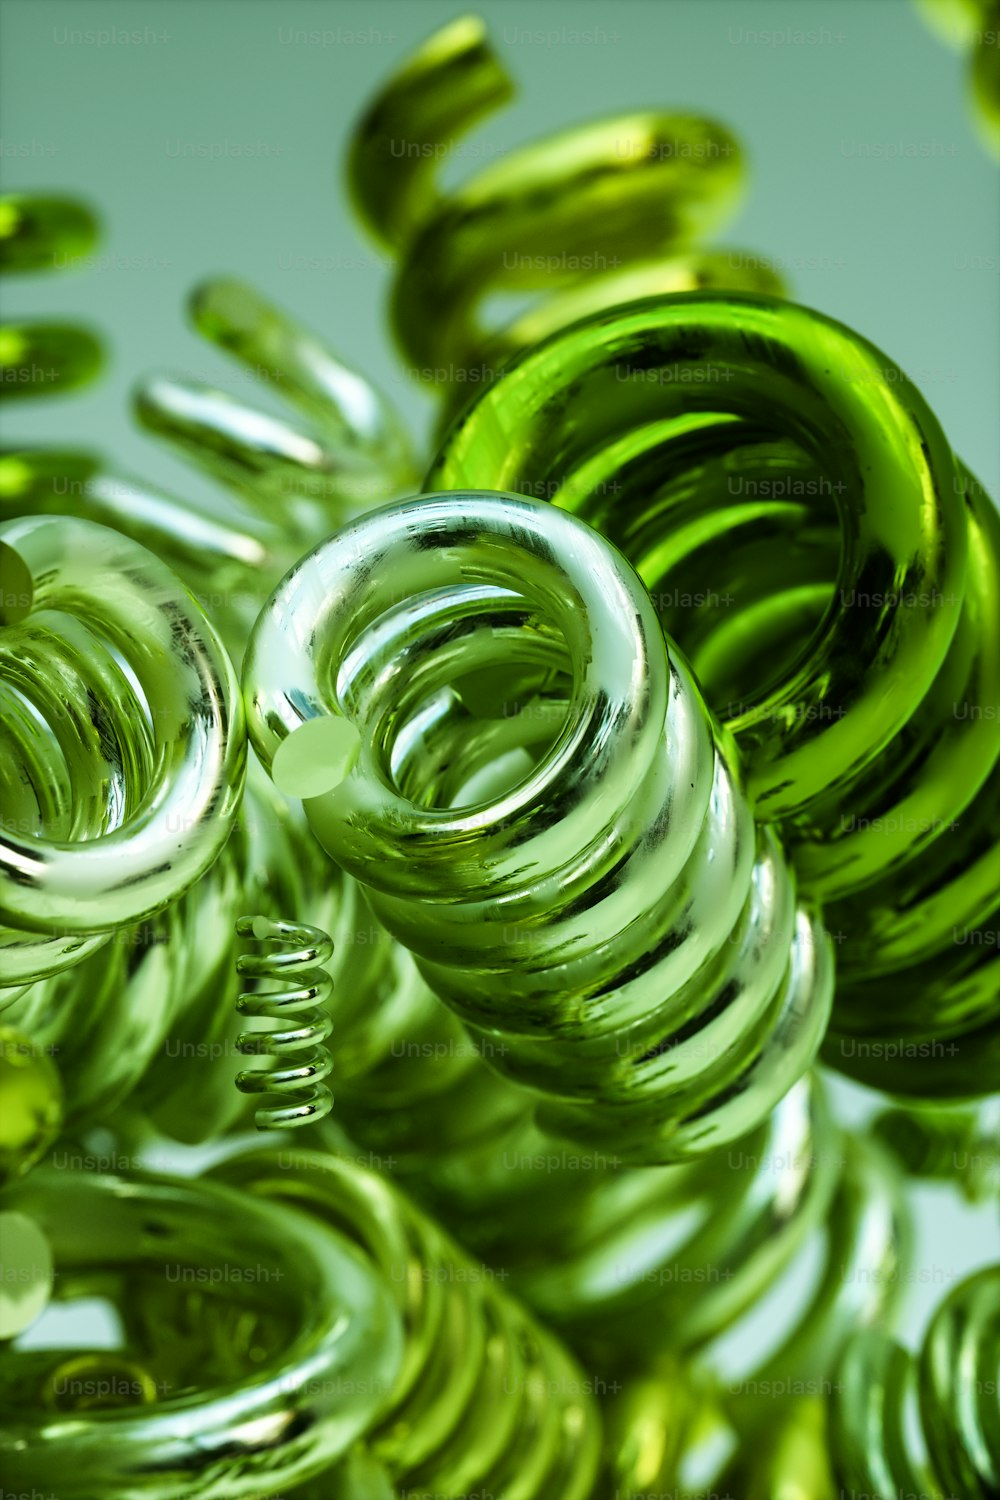 Un montón de espirales verdes que están en el aire